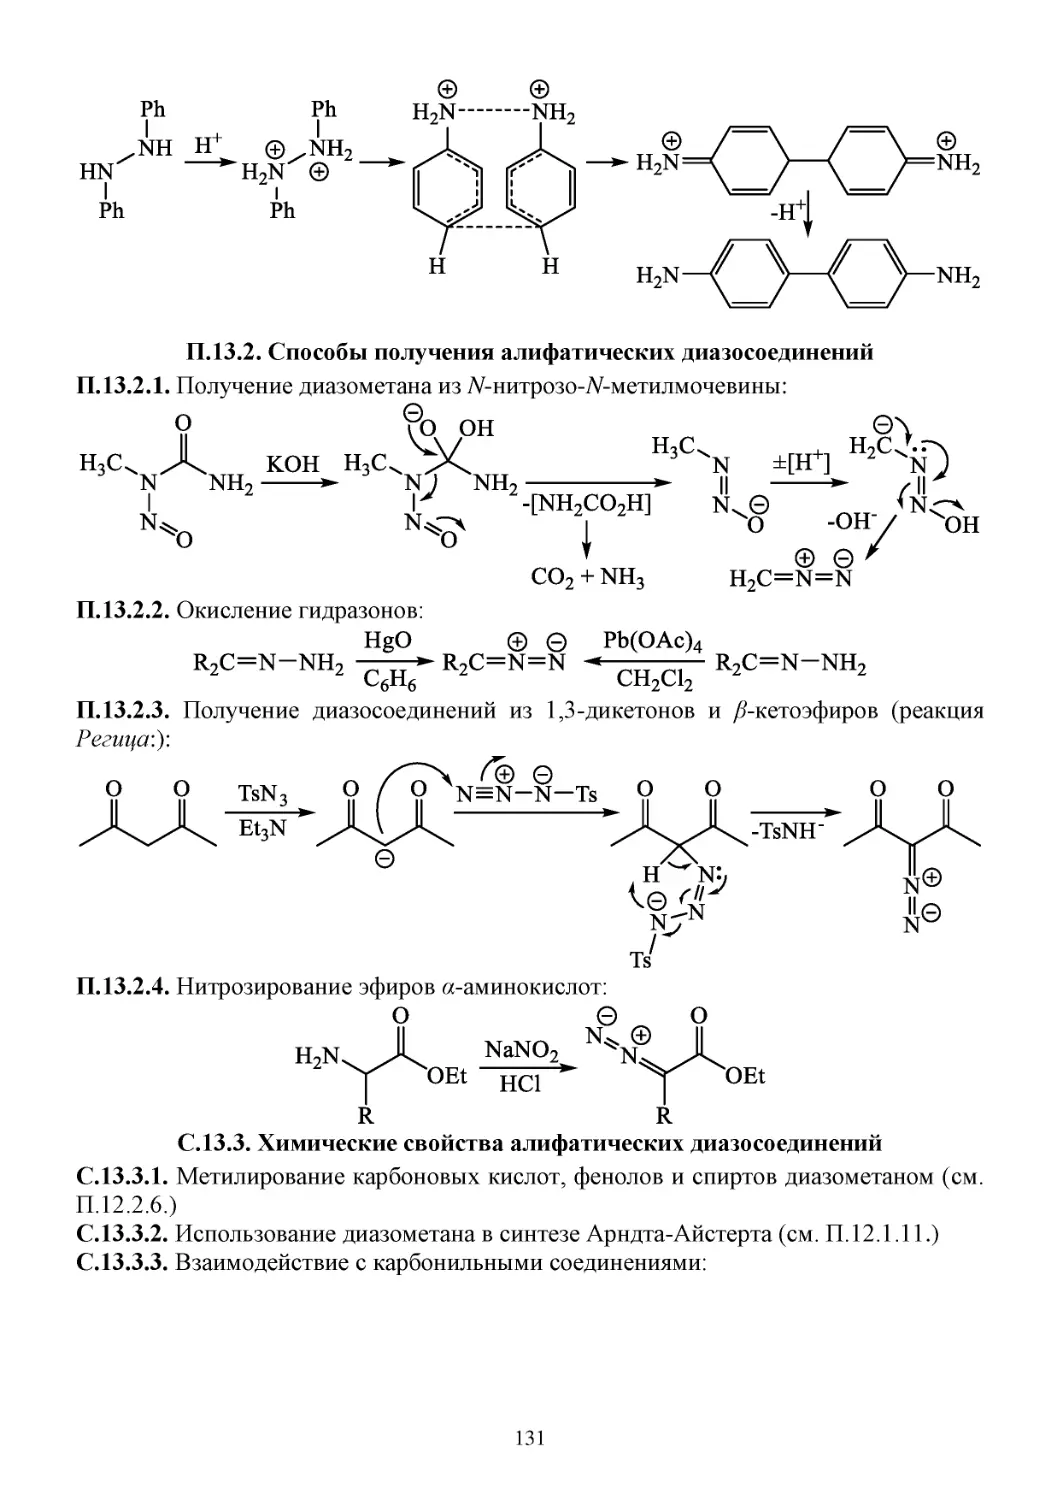 П.13.2. Способы получения алифатических диазосоединений
С.13.3. Химические свойства алифатических диазосоединений